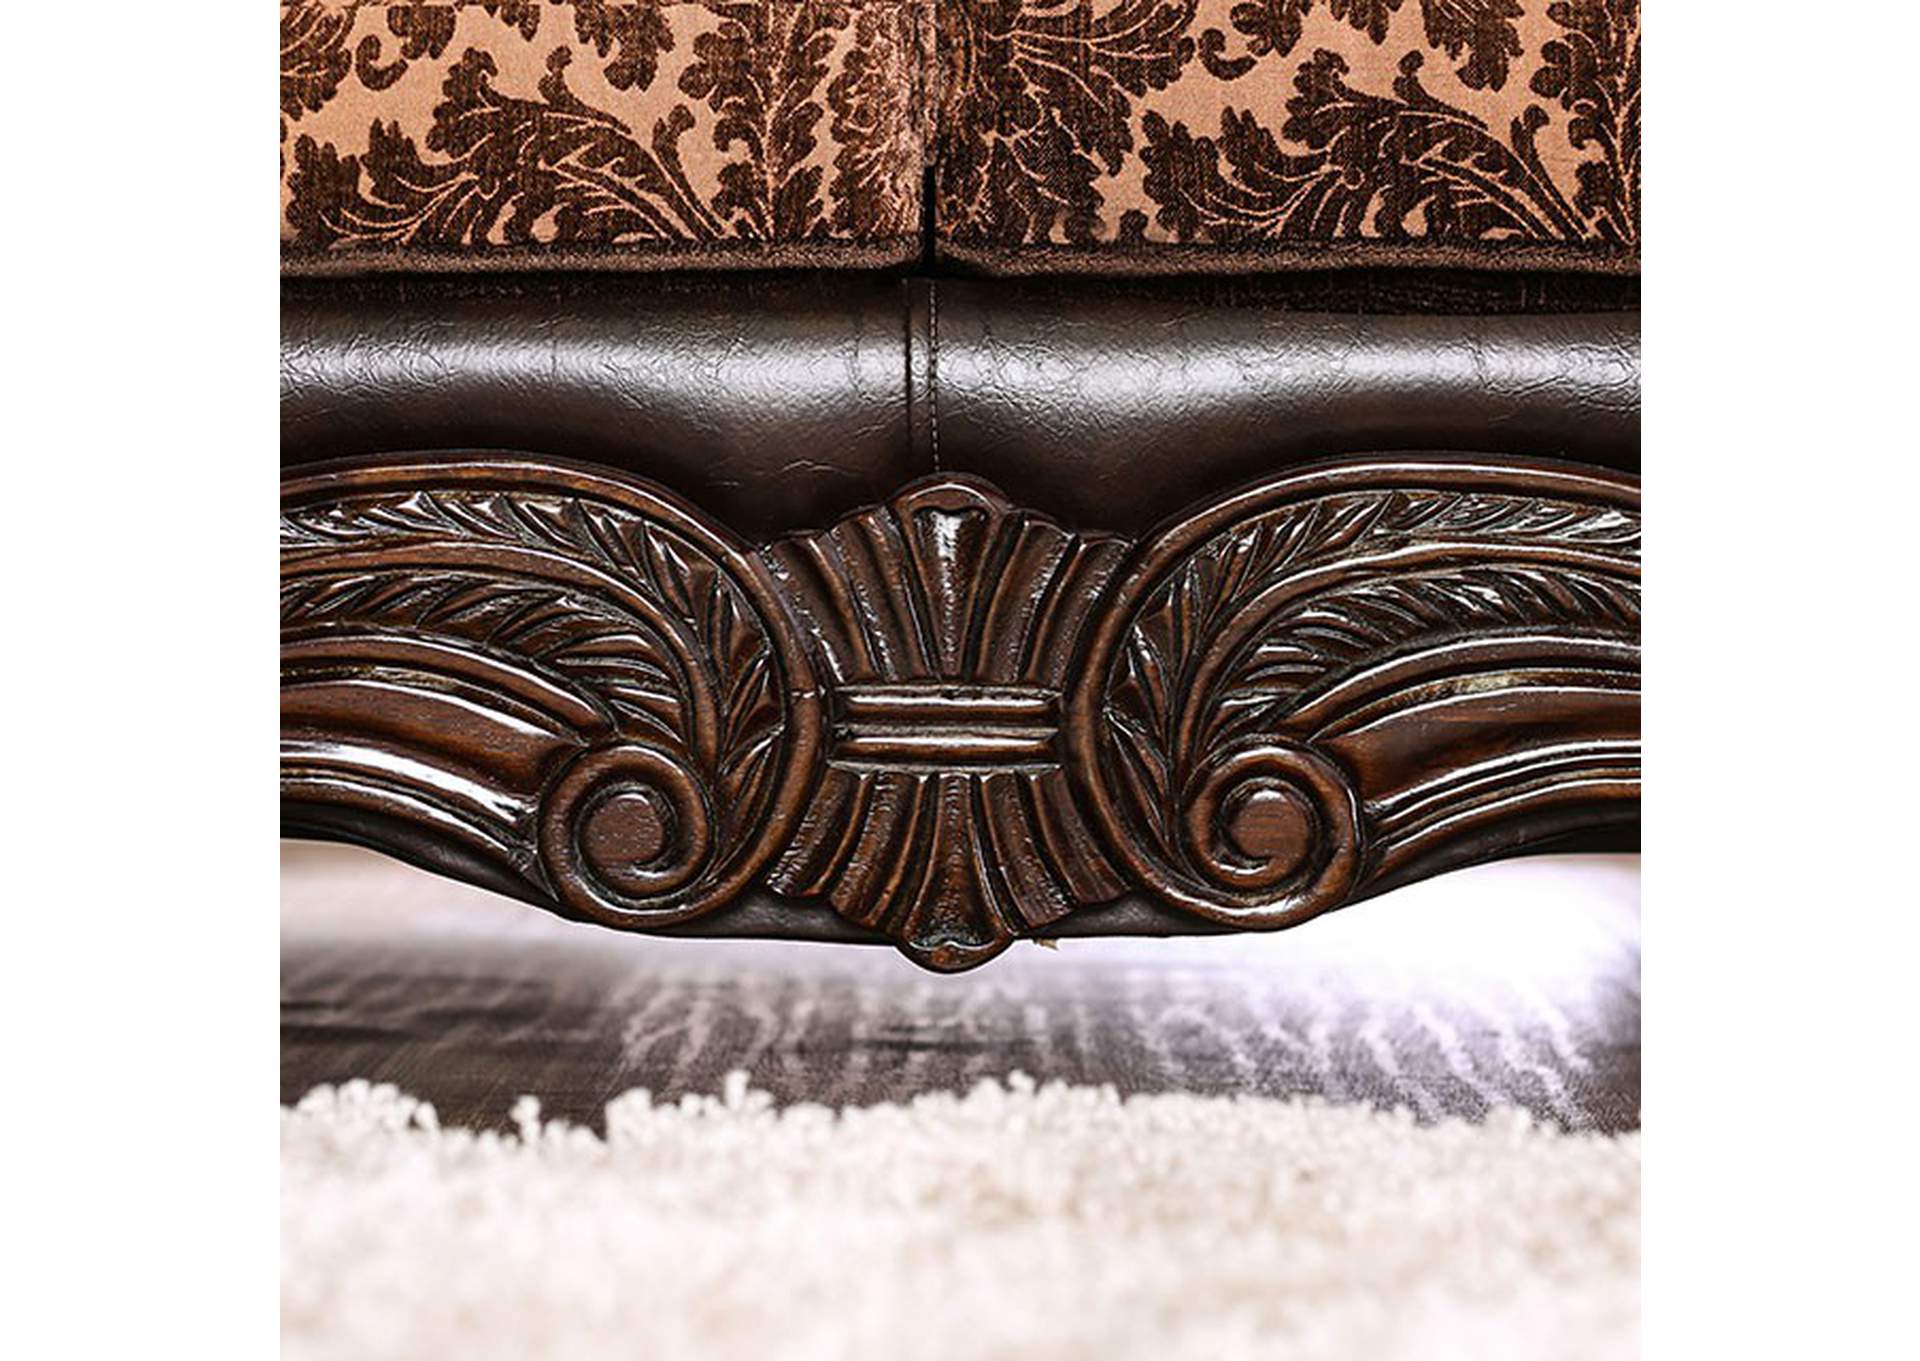 Elpis Brown Sofa,Furniture of America